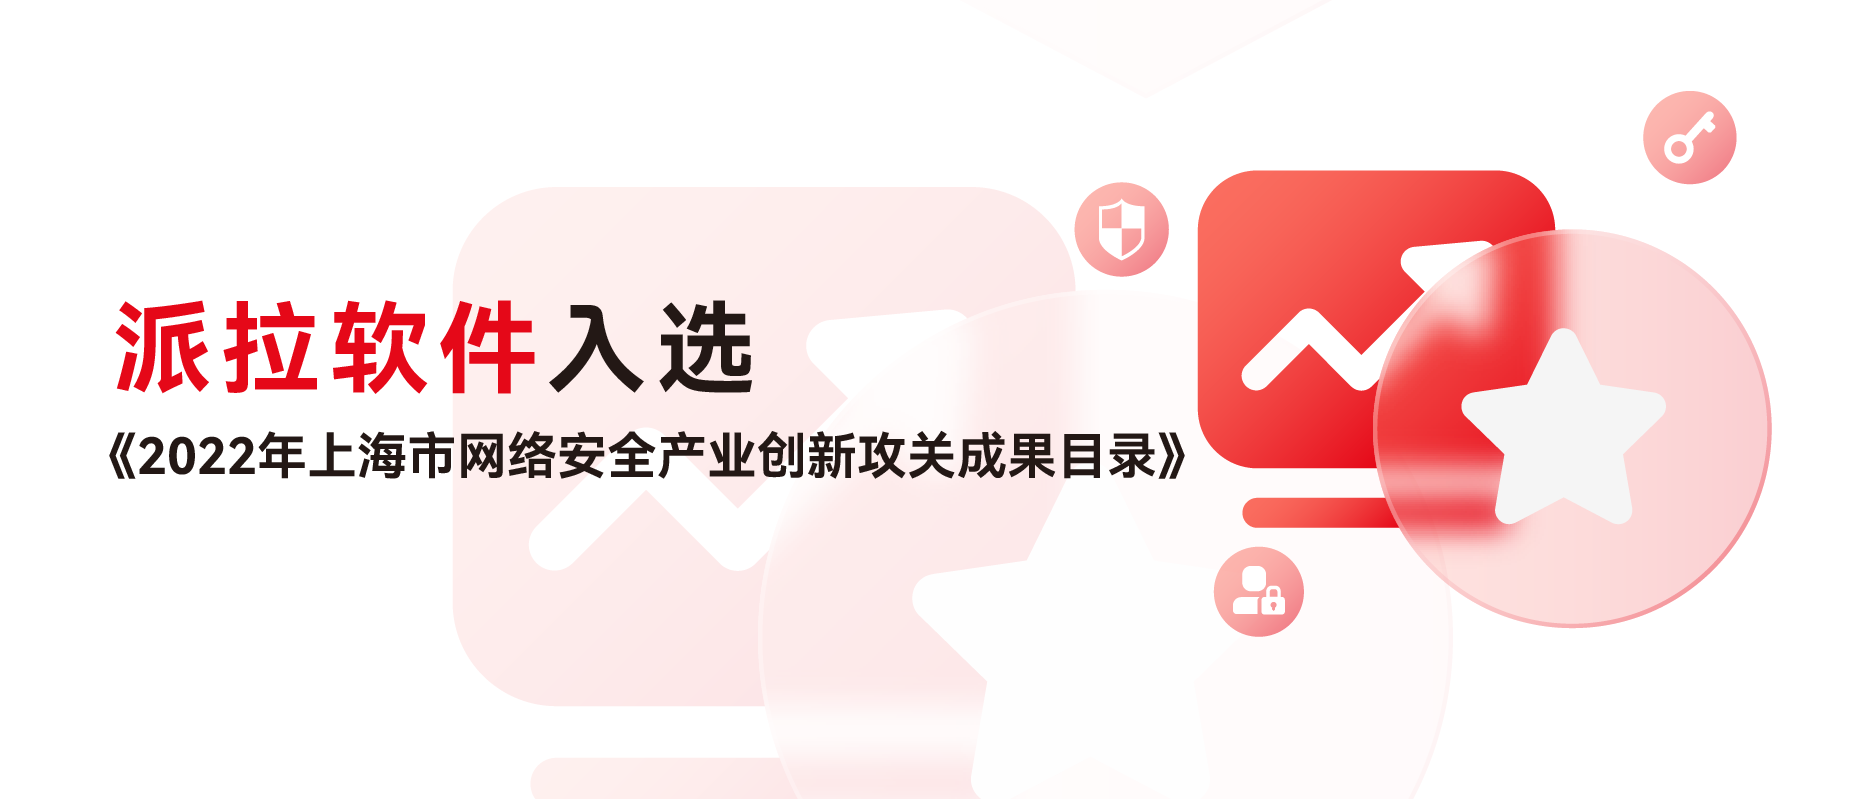 精进创新 | 派拉软件API安全平台入选《2022年上海市网络安全产业创新攻关成果目录》